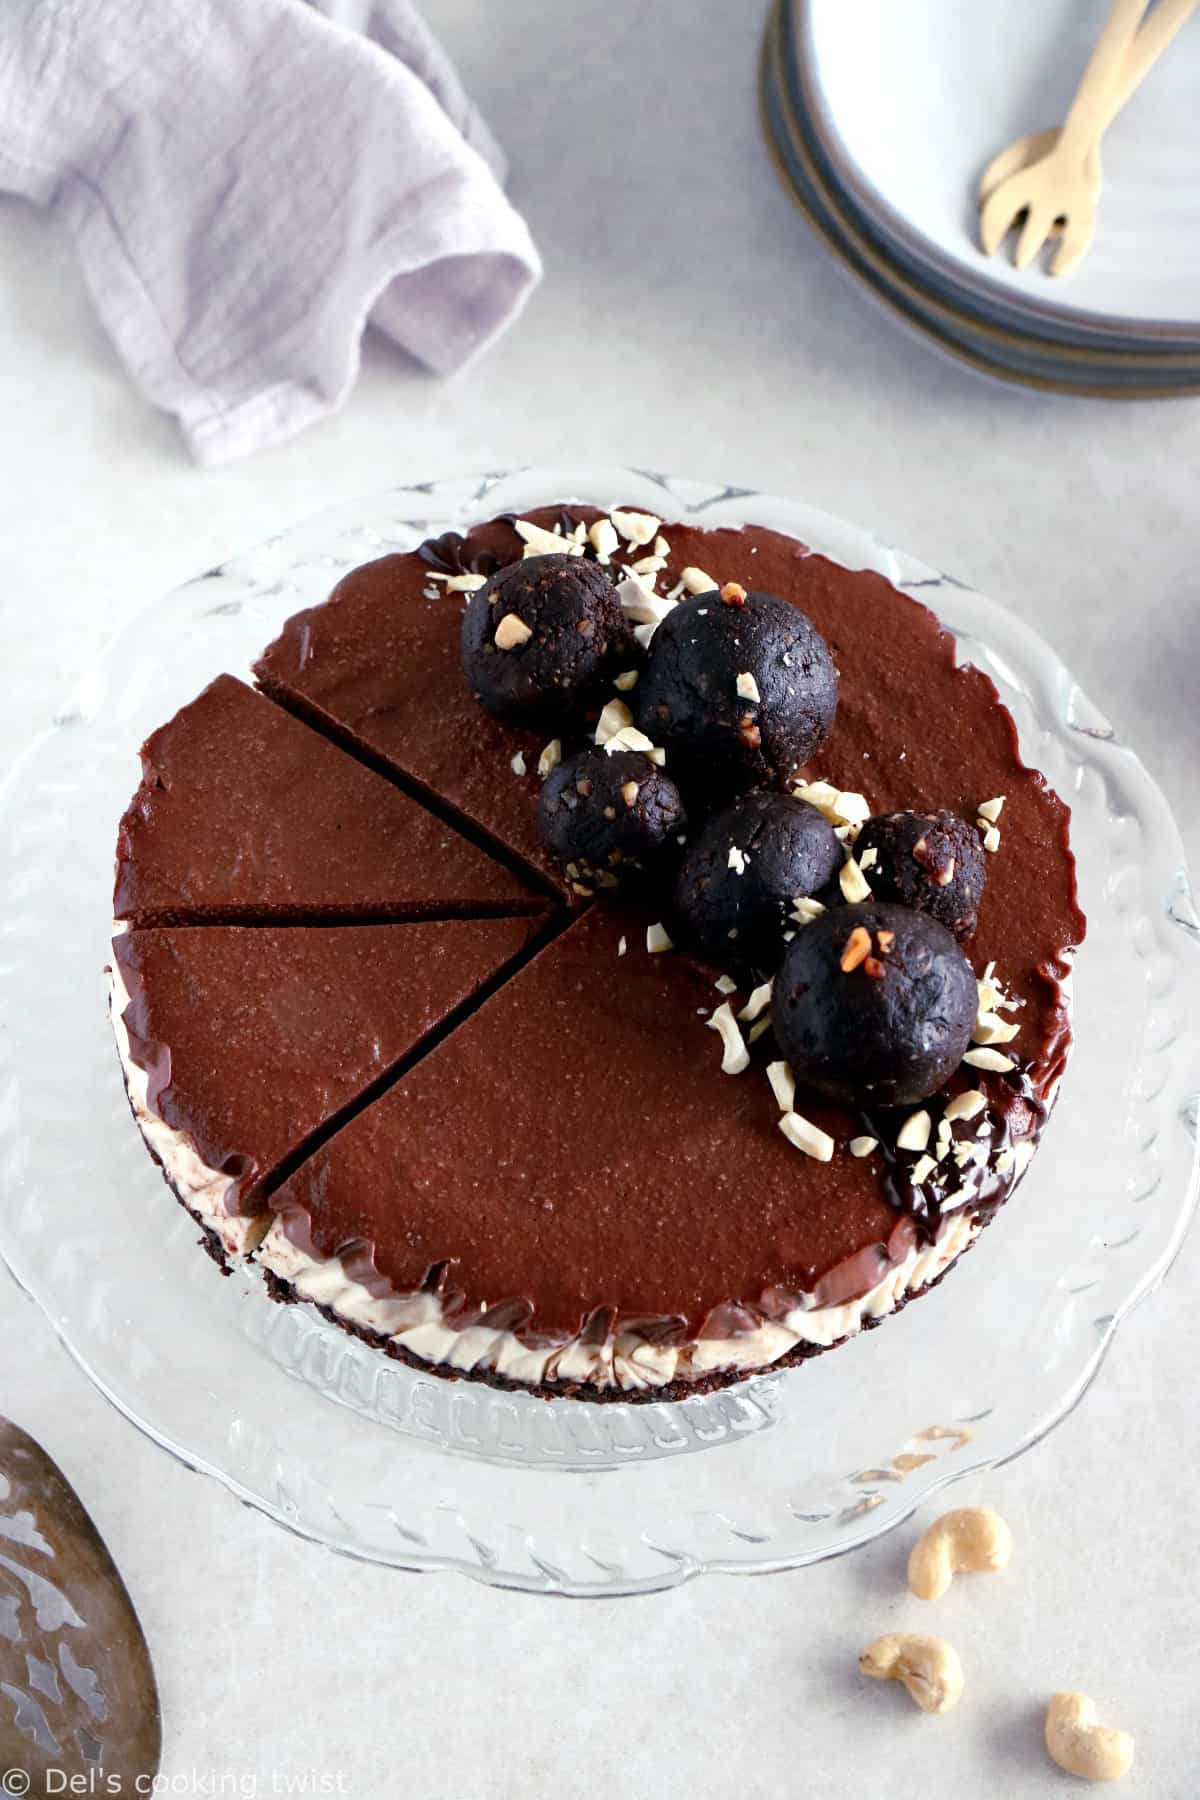 Ce cheesecake vegan au chocolat et noix de cajou vous fera fondre de plaisir. C'est un dessert vegan sain réalisé avec une base croustillante chocolatée réhaussée de deux couches crémeuses aux noix de cajou.